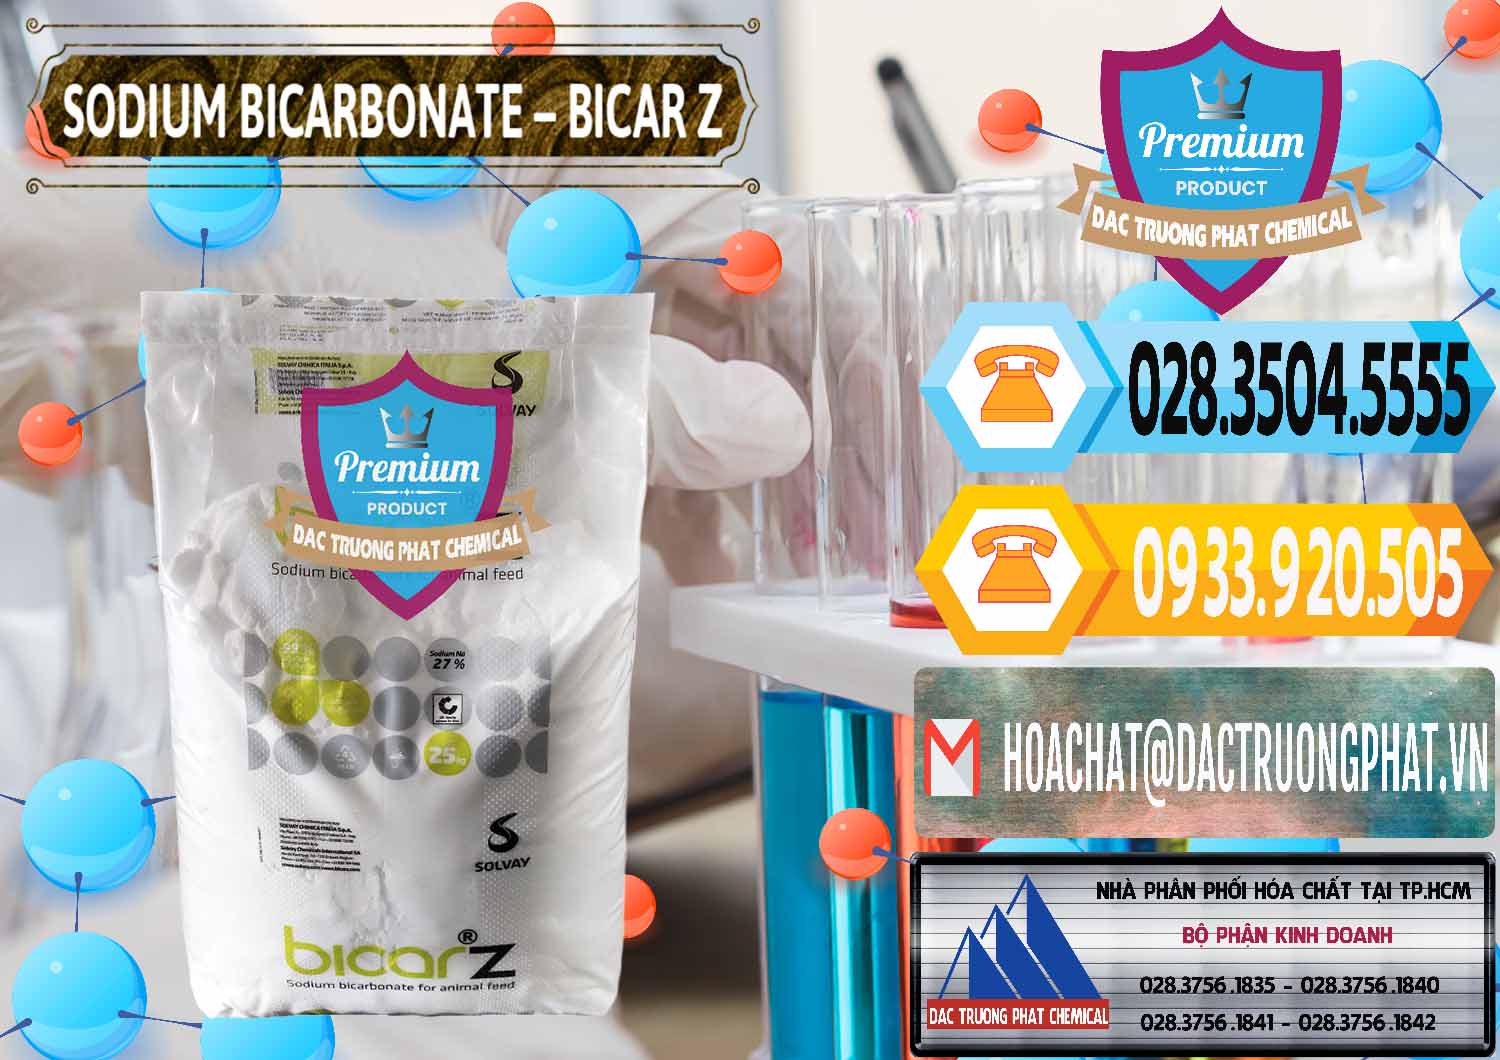 Cty chuyên bán _ phân phối Sodium Bicarbonate – NaHCO3 Bicar Z Ý Italy Solvay - 0139 - Cty chuyên nhập khẩu _ phân phối hóa chất tại TP.HCM - hoachattayrua.net